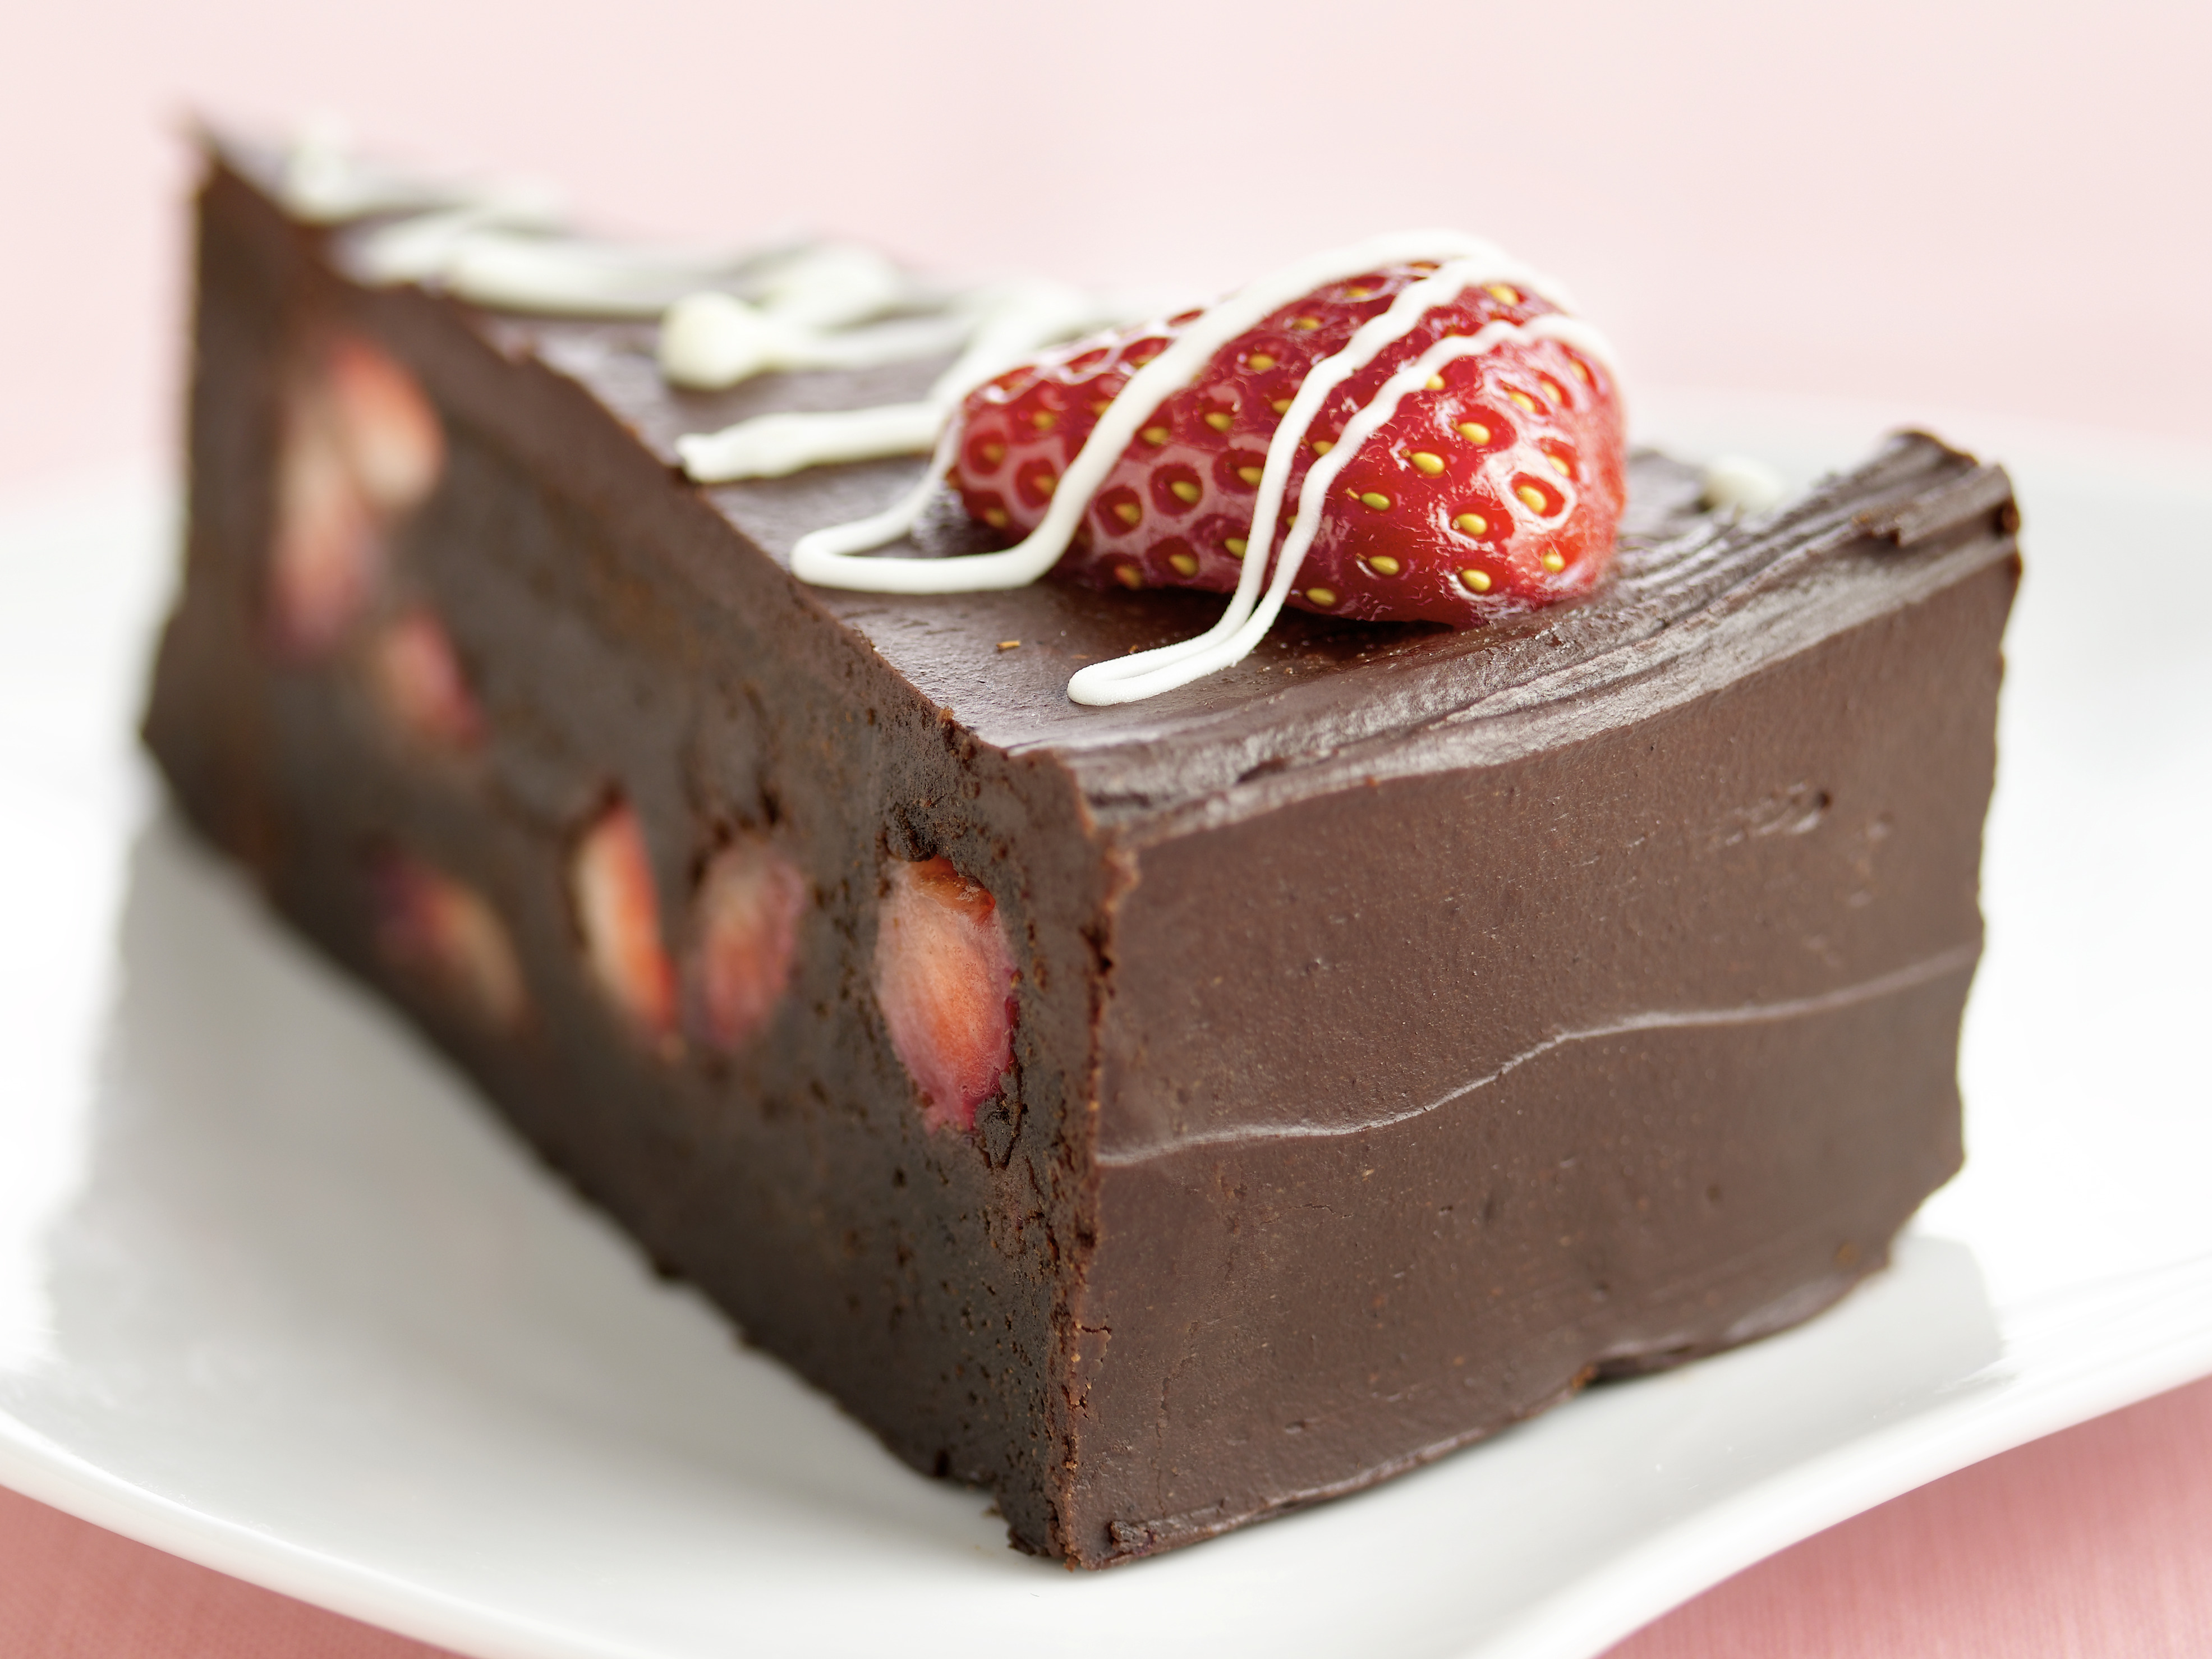 Rich Chocolate Truffle Fudge Cake- Justine Pattison's showstopper recipe